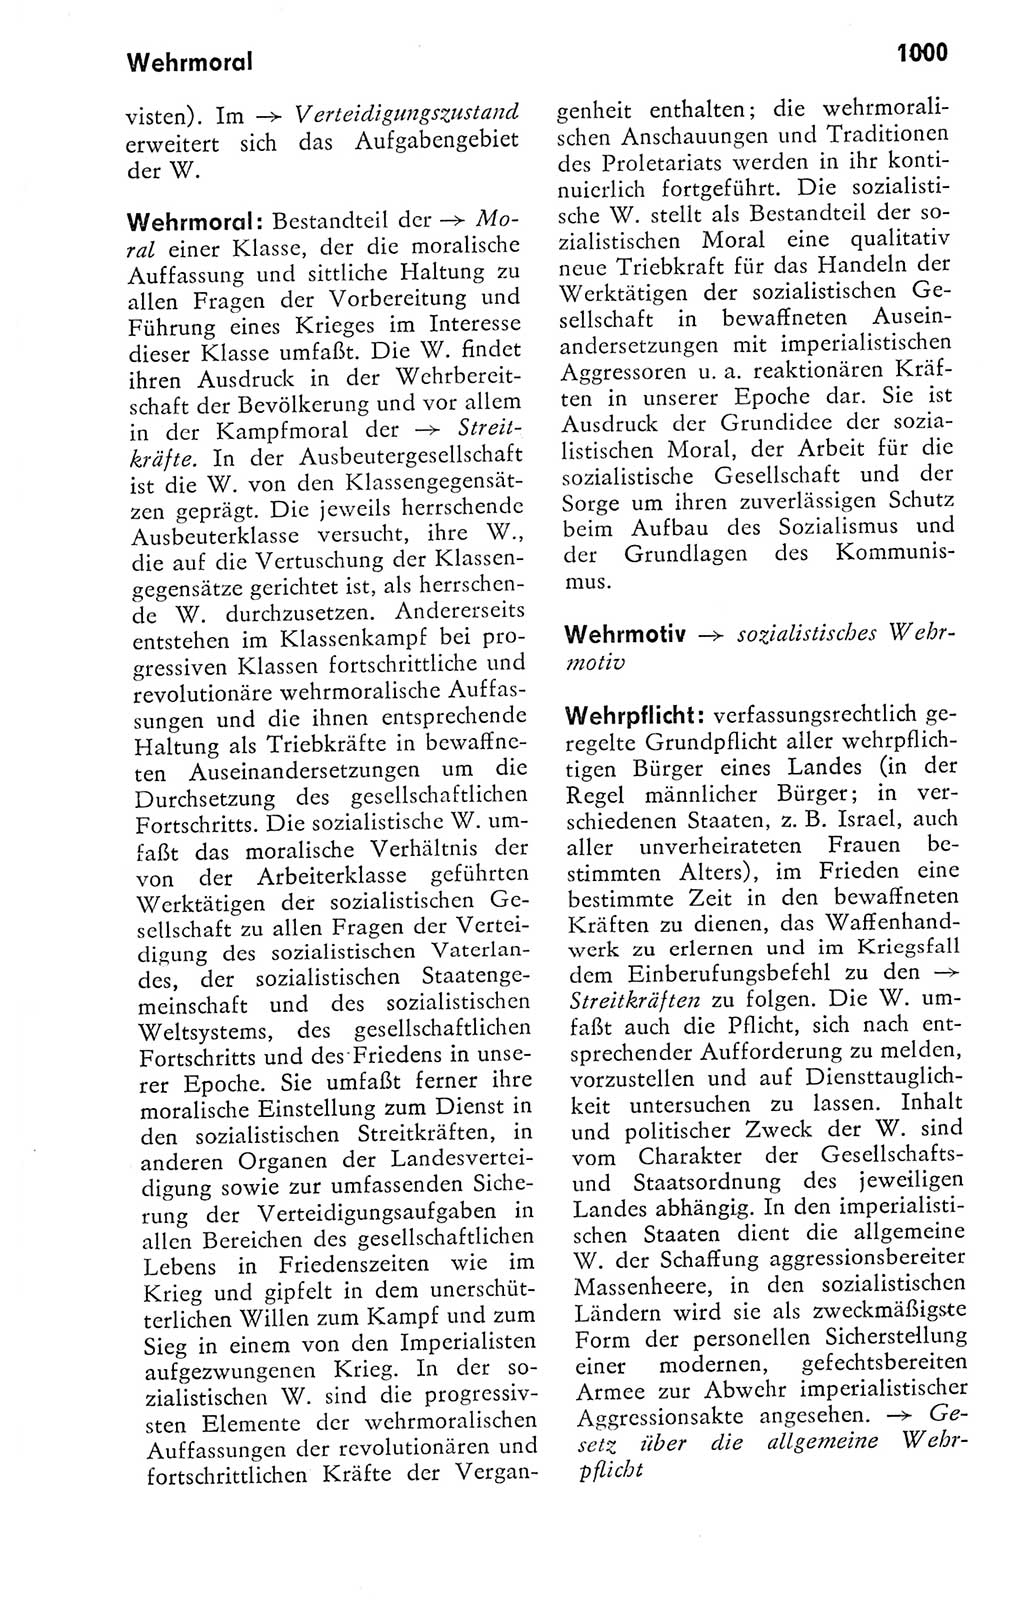 Kleines politisches Wörterbuch [Deutsche Demokratische Republik (DDR)] 1978, Seite 1000 (Kl. pol. Wb. DDR 1978, S. 1000)